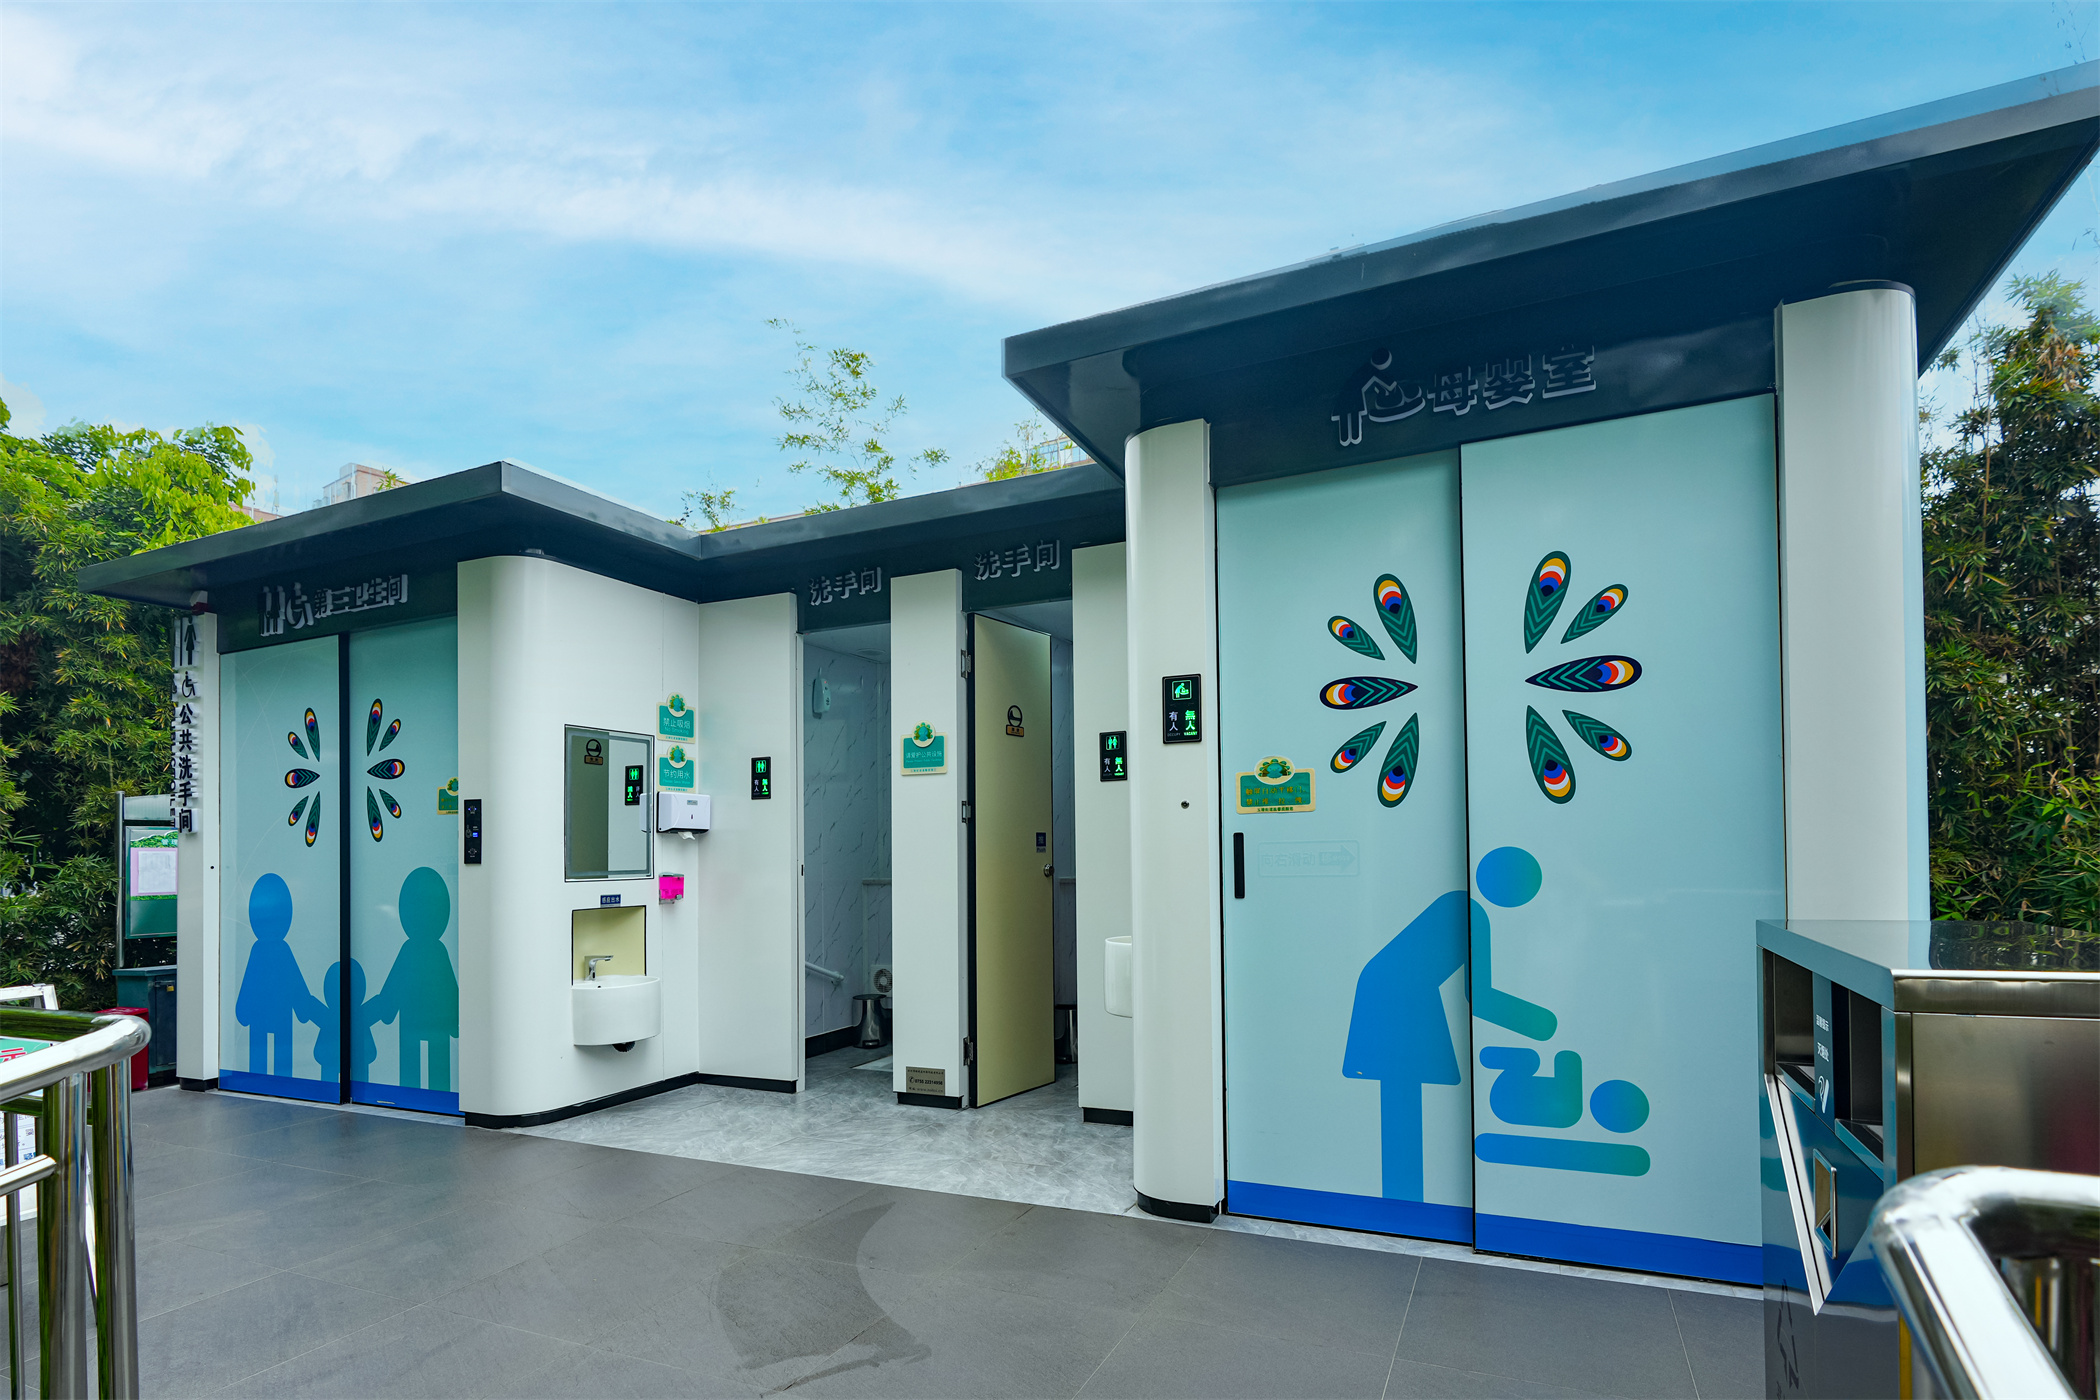 “小公厕”智能化升级助力城市“大文明” 玉塘街道打造首座智慧公厕